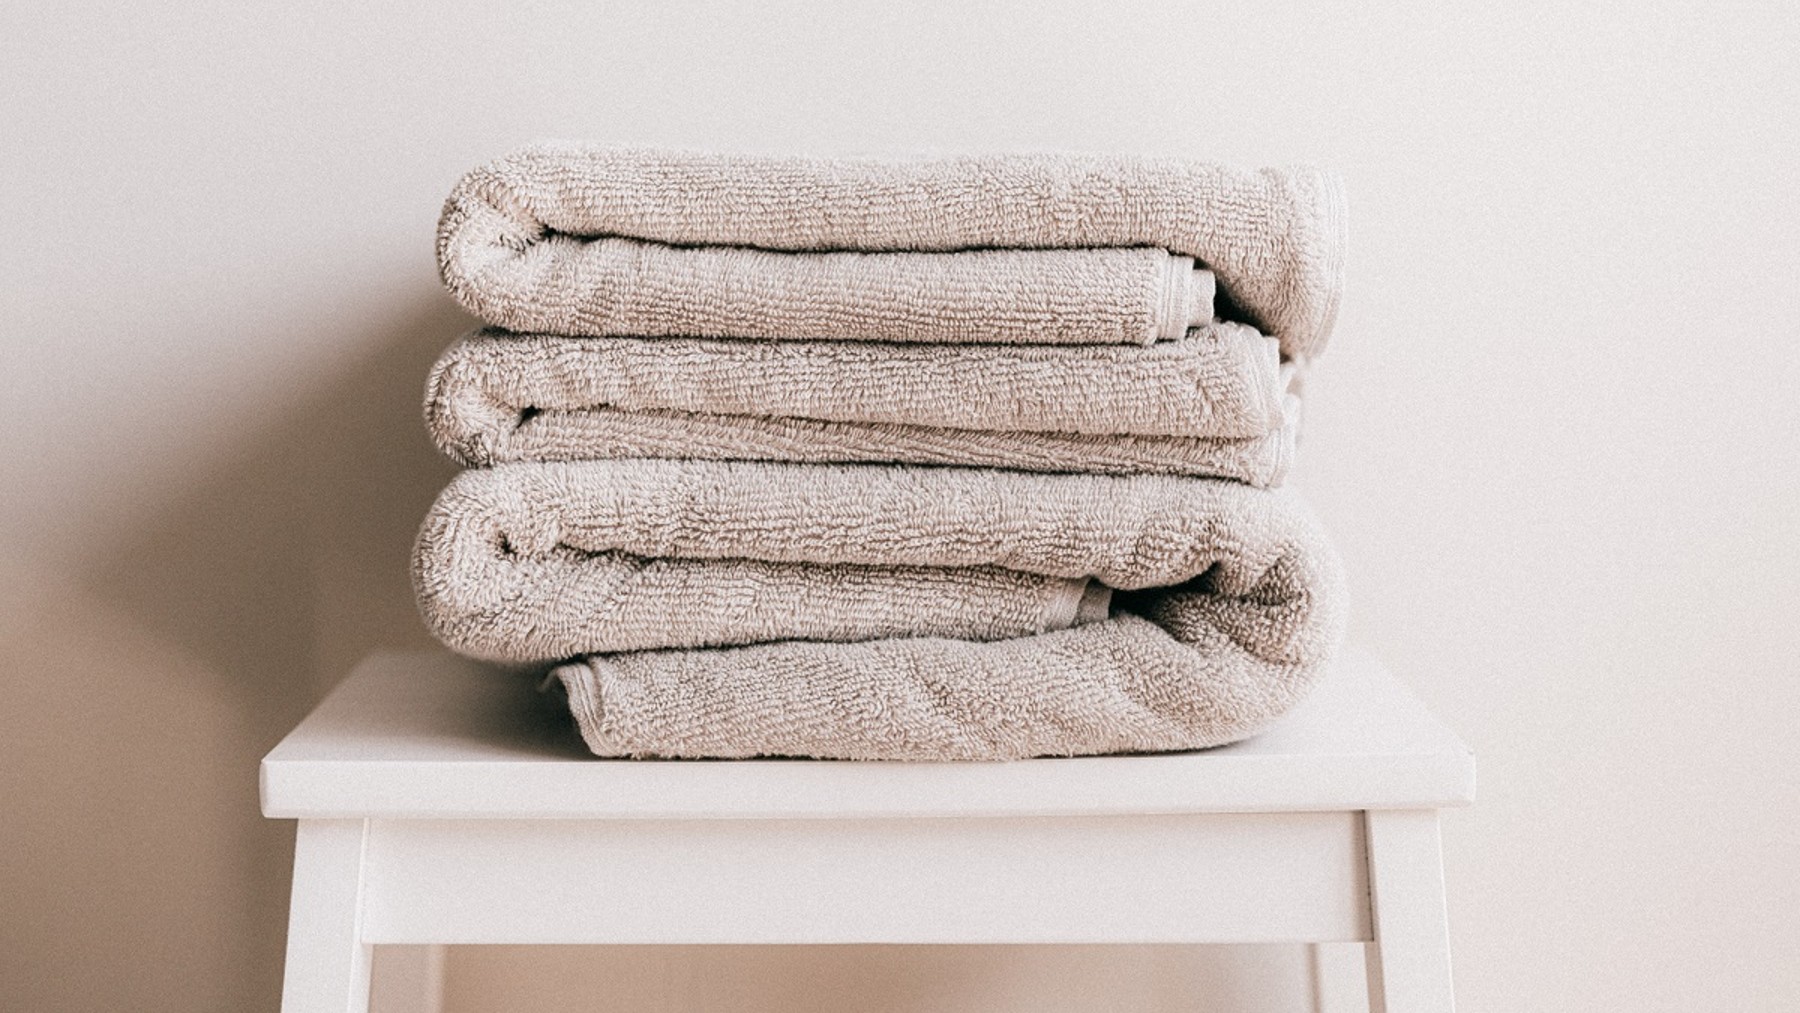 Juegos de toallas completos para baño, lavabo y bidé